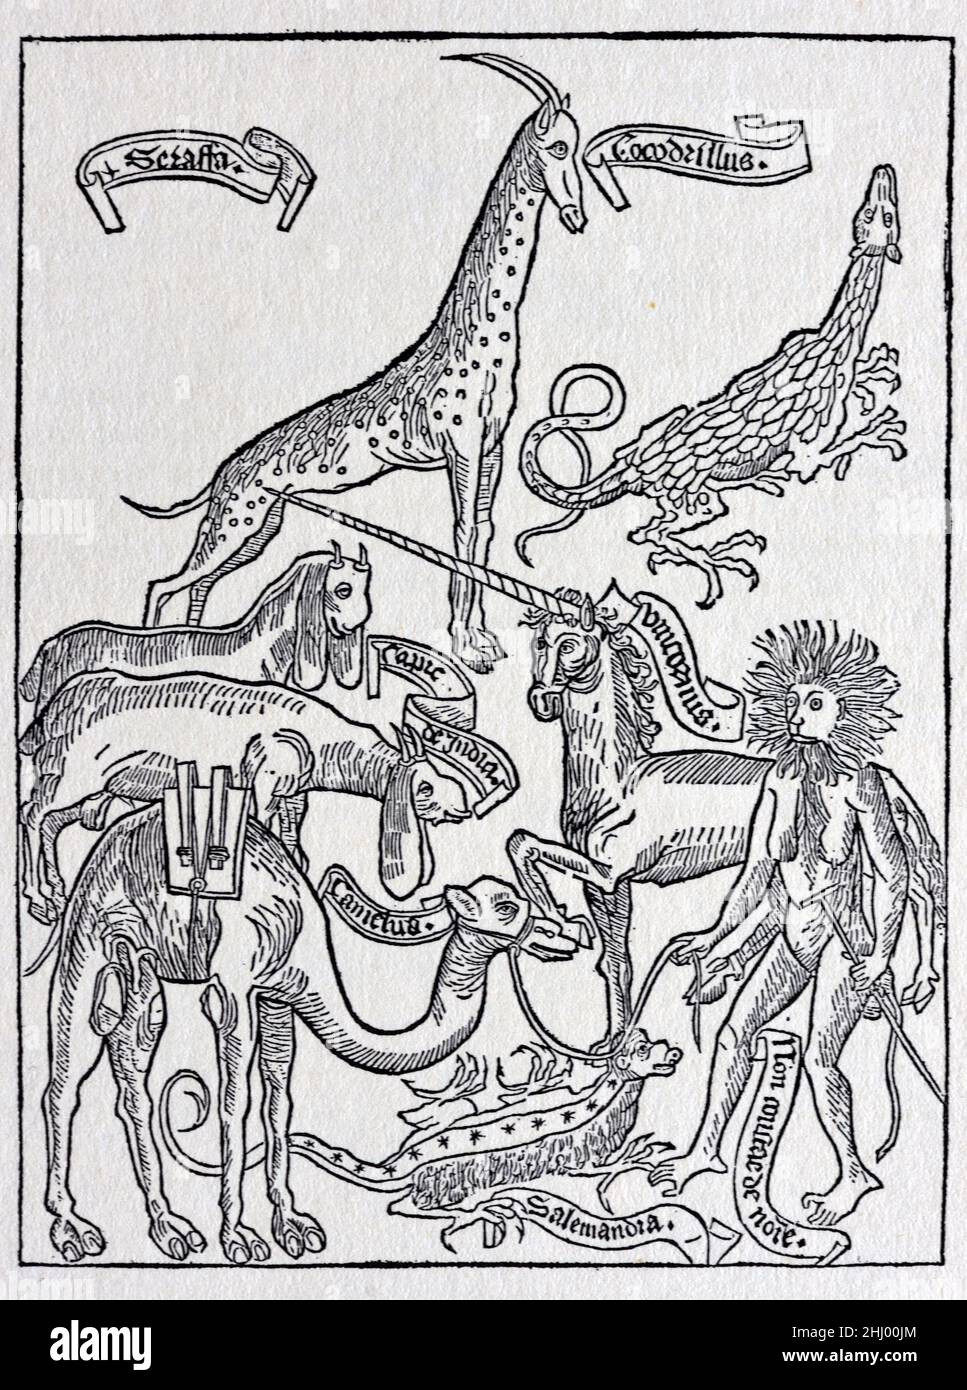 Fantásticas bestias, fabulosas criaturas y animales míticos, incluyendo un unicornio, supuestamente atestiguado por Bernhard von Breidenbach (1440-1497) en sus viajes a Tierra Santa en 1483-84. Grabado en madera publicado en Peregrinatio in Terrum Sanctam (1486). Impresión, grabado o ilustración de madera vintage Foto de stock